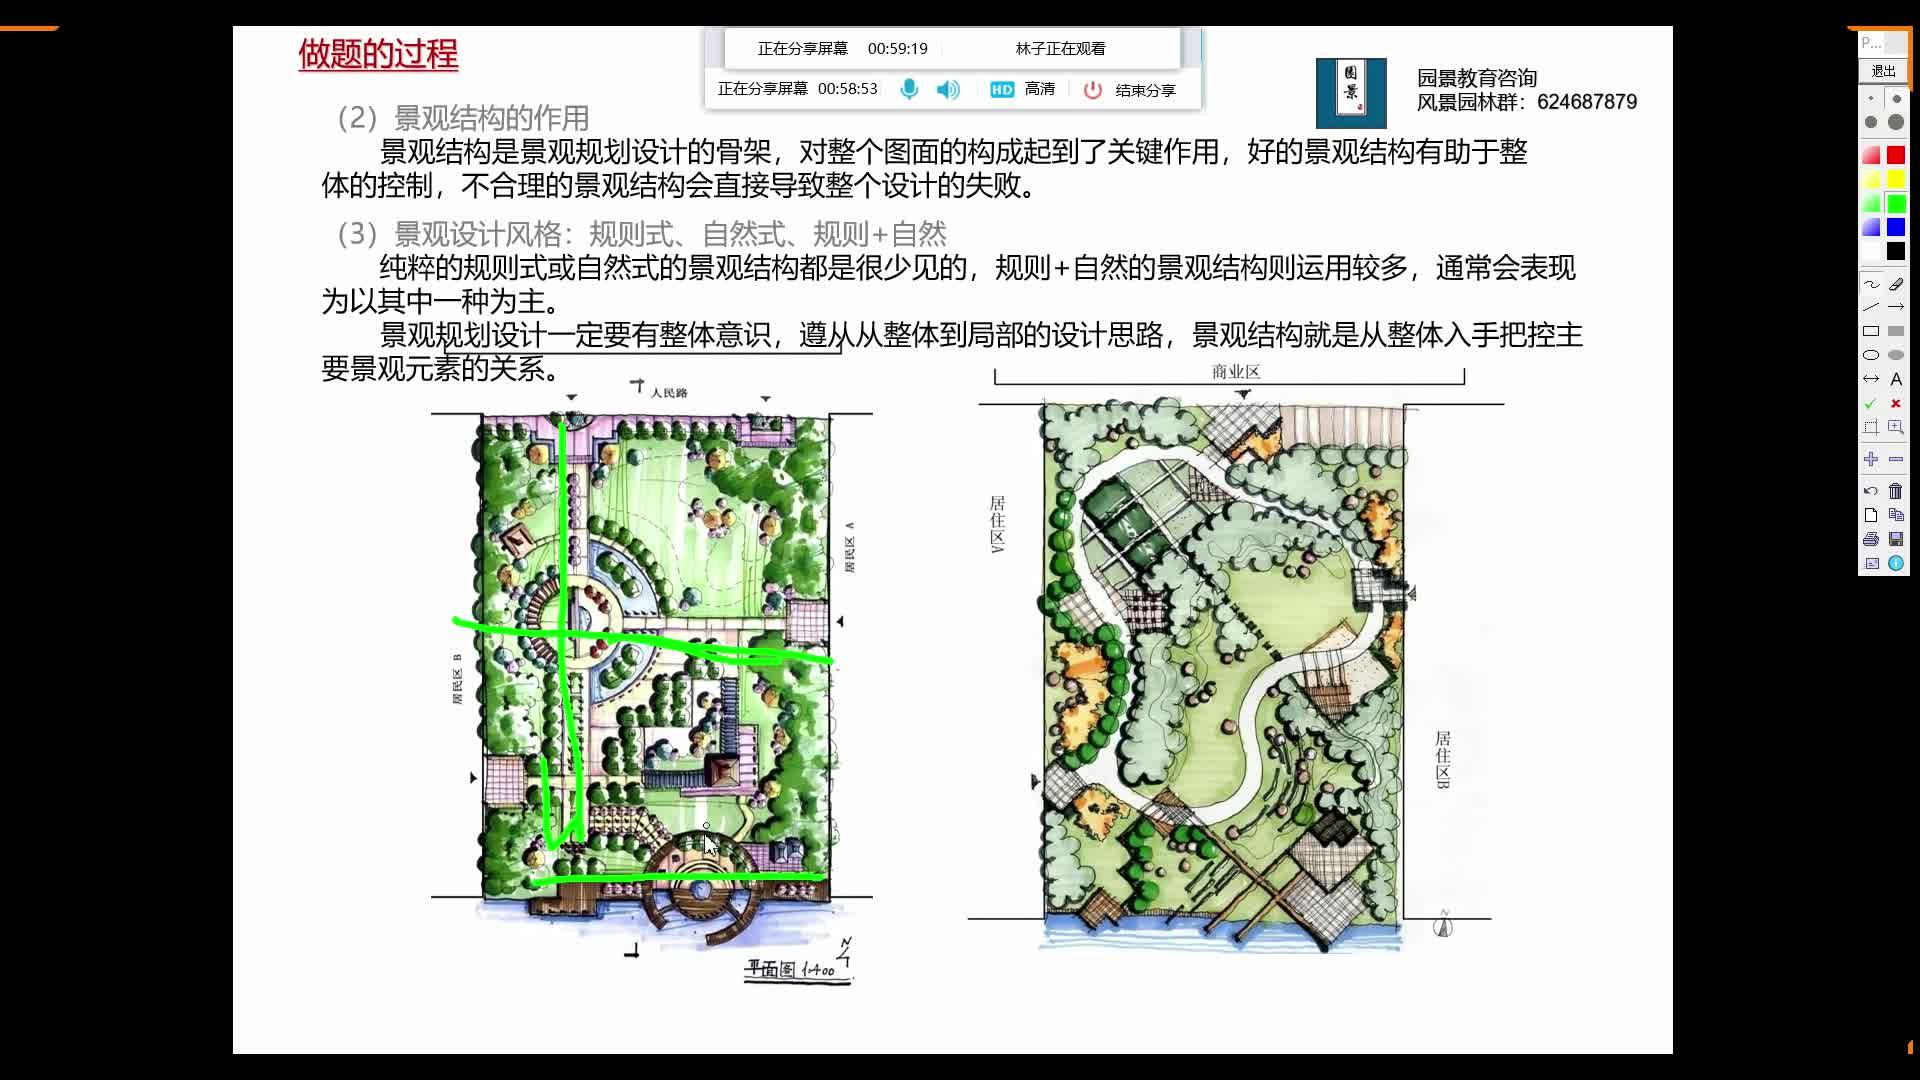 南京林业大学风景园林802园林设计快题考研基础课1